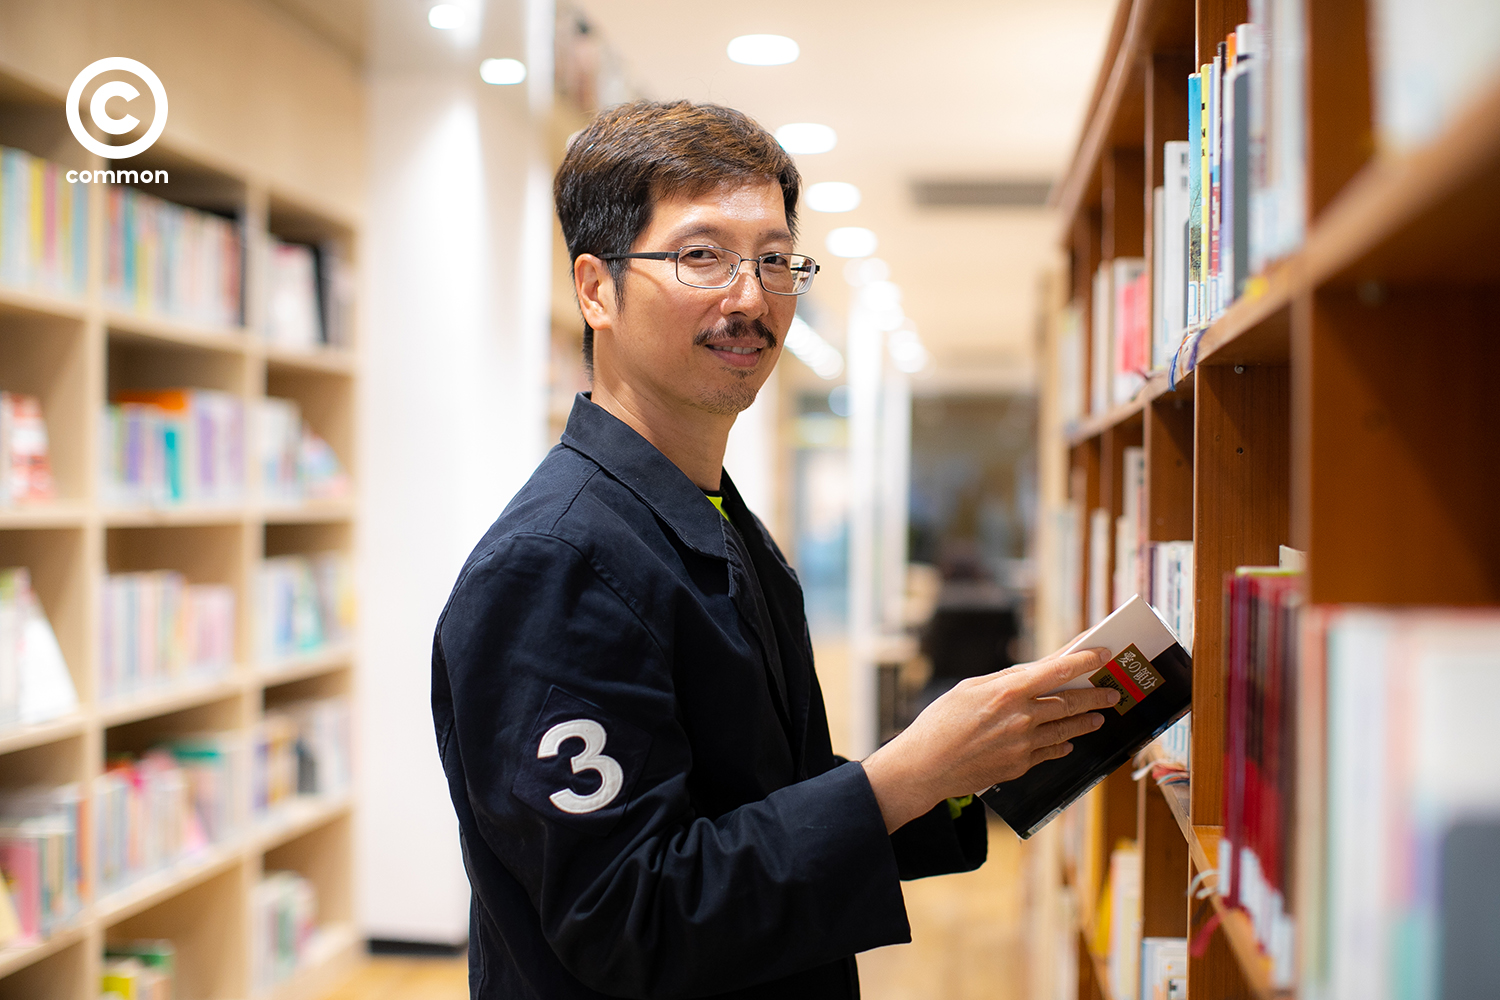 หนังสือ-หนังญี่ปุ่น ที่บรรณารักษ์ห้องสมุดเจแปน ฟาวน์เดชั่น กรุงเทพฯ แนะนำ ว่าไม่ควรพลาด!